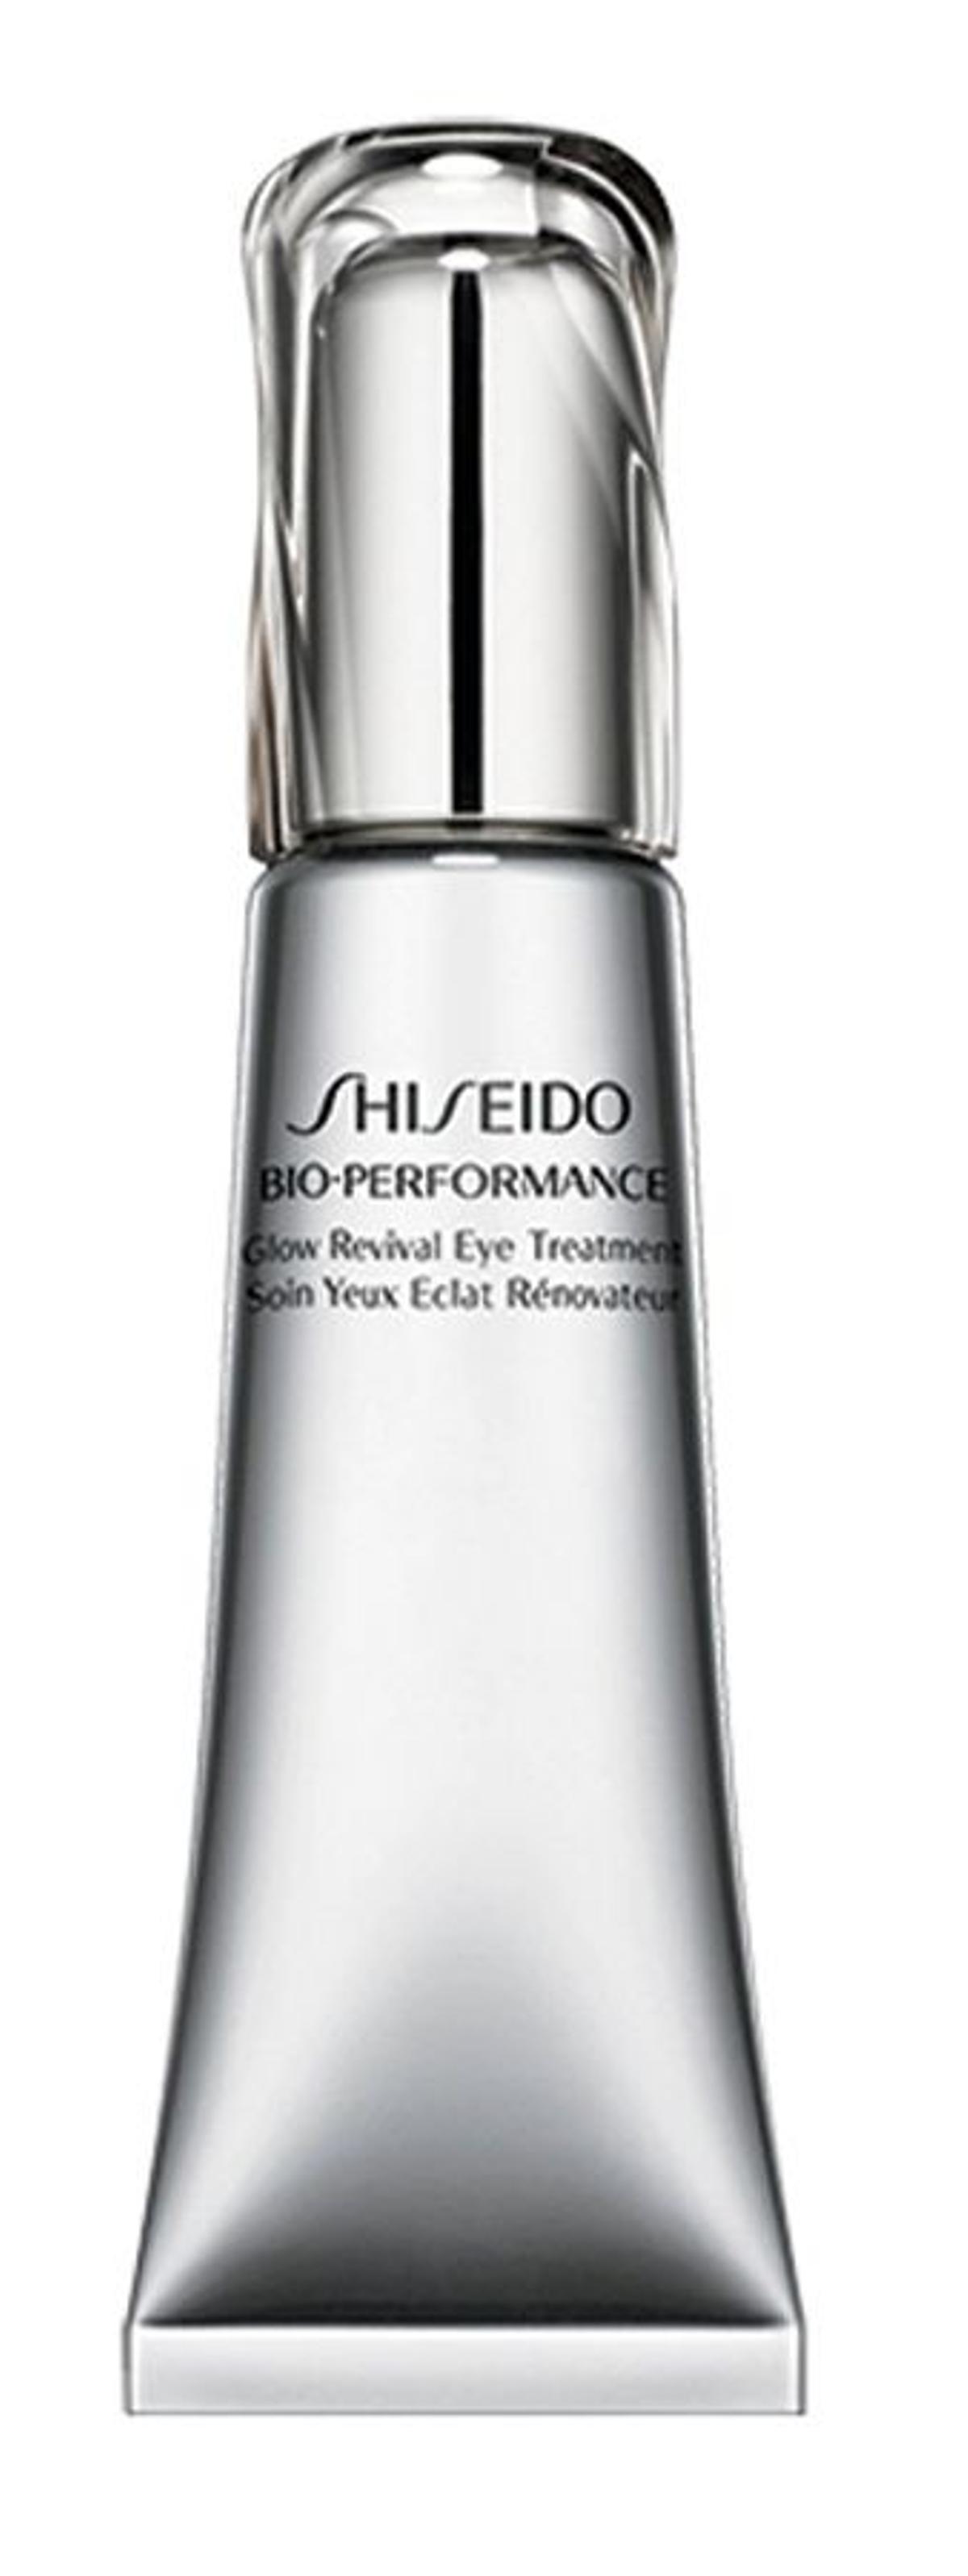 Glow Revival Eye Treatment, Shiseido